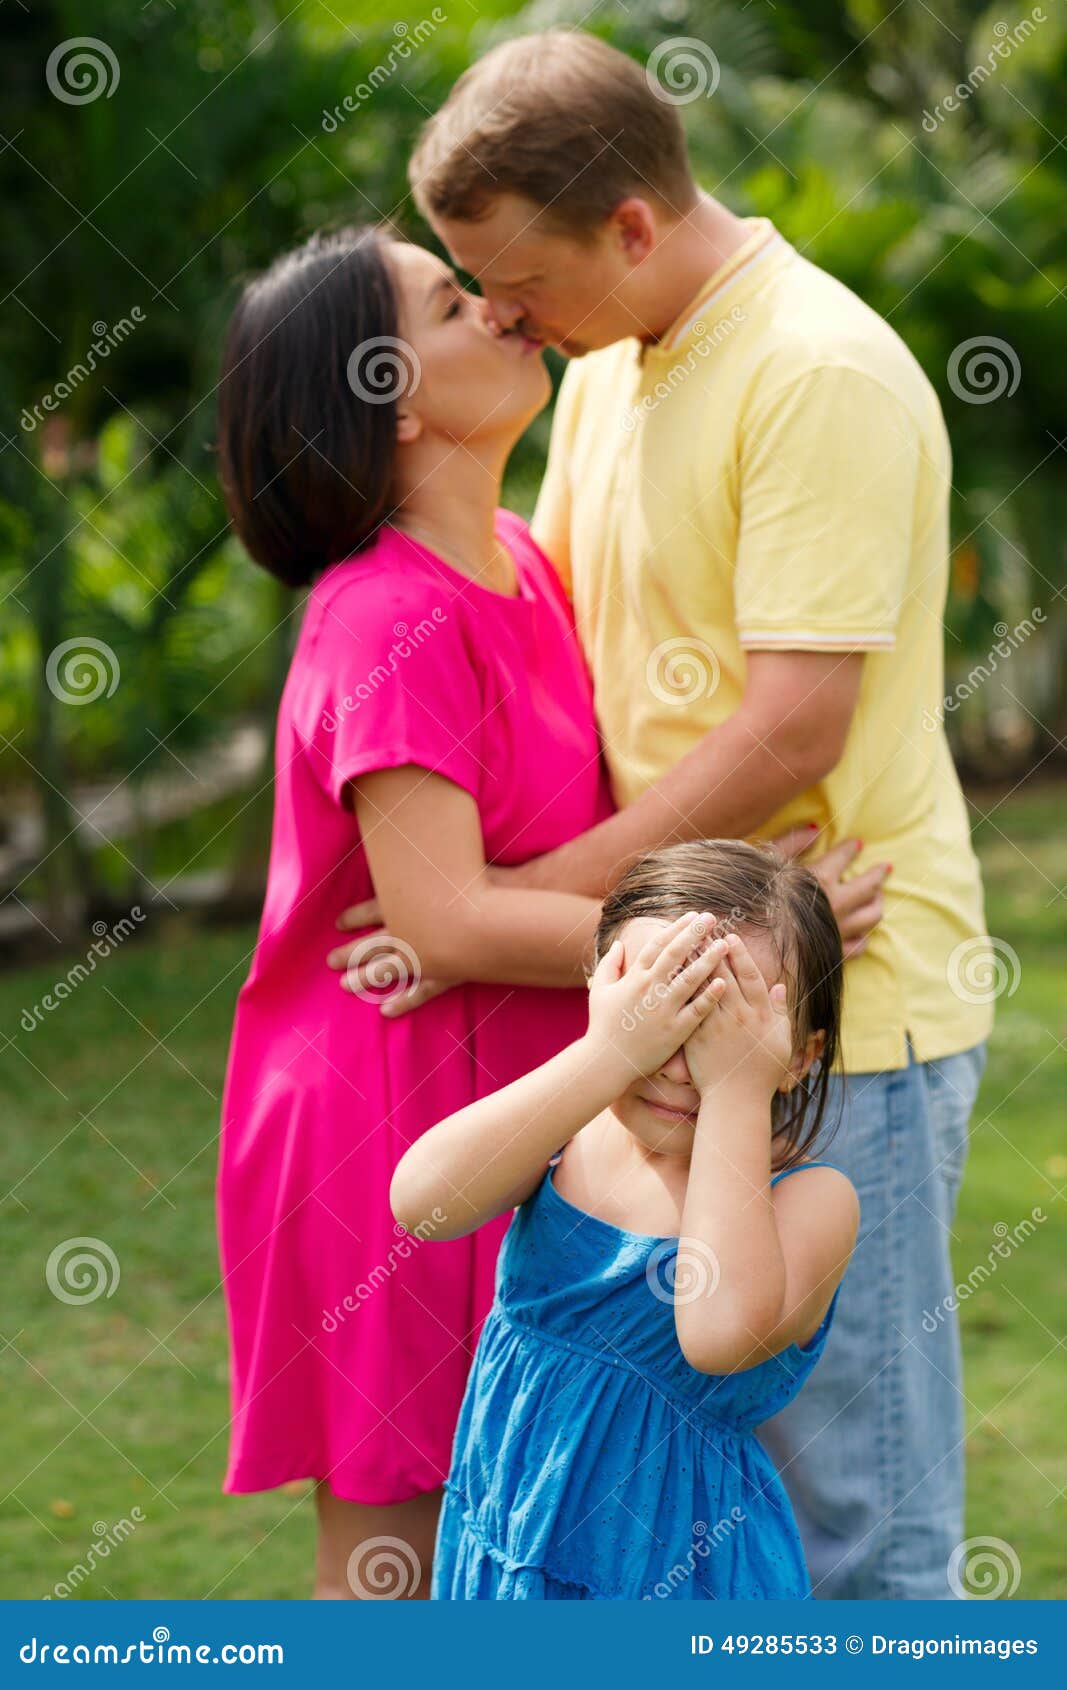 Мама папа поцелуй. Поцелуй родителей. Объятия детей и родителей. Поцелуй родителей при детях. Родители целуются.